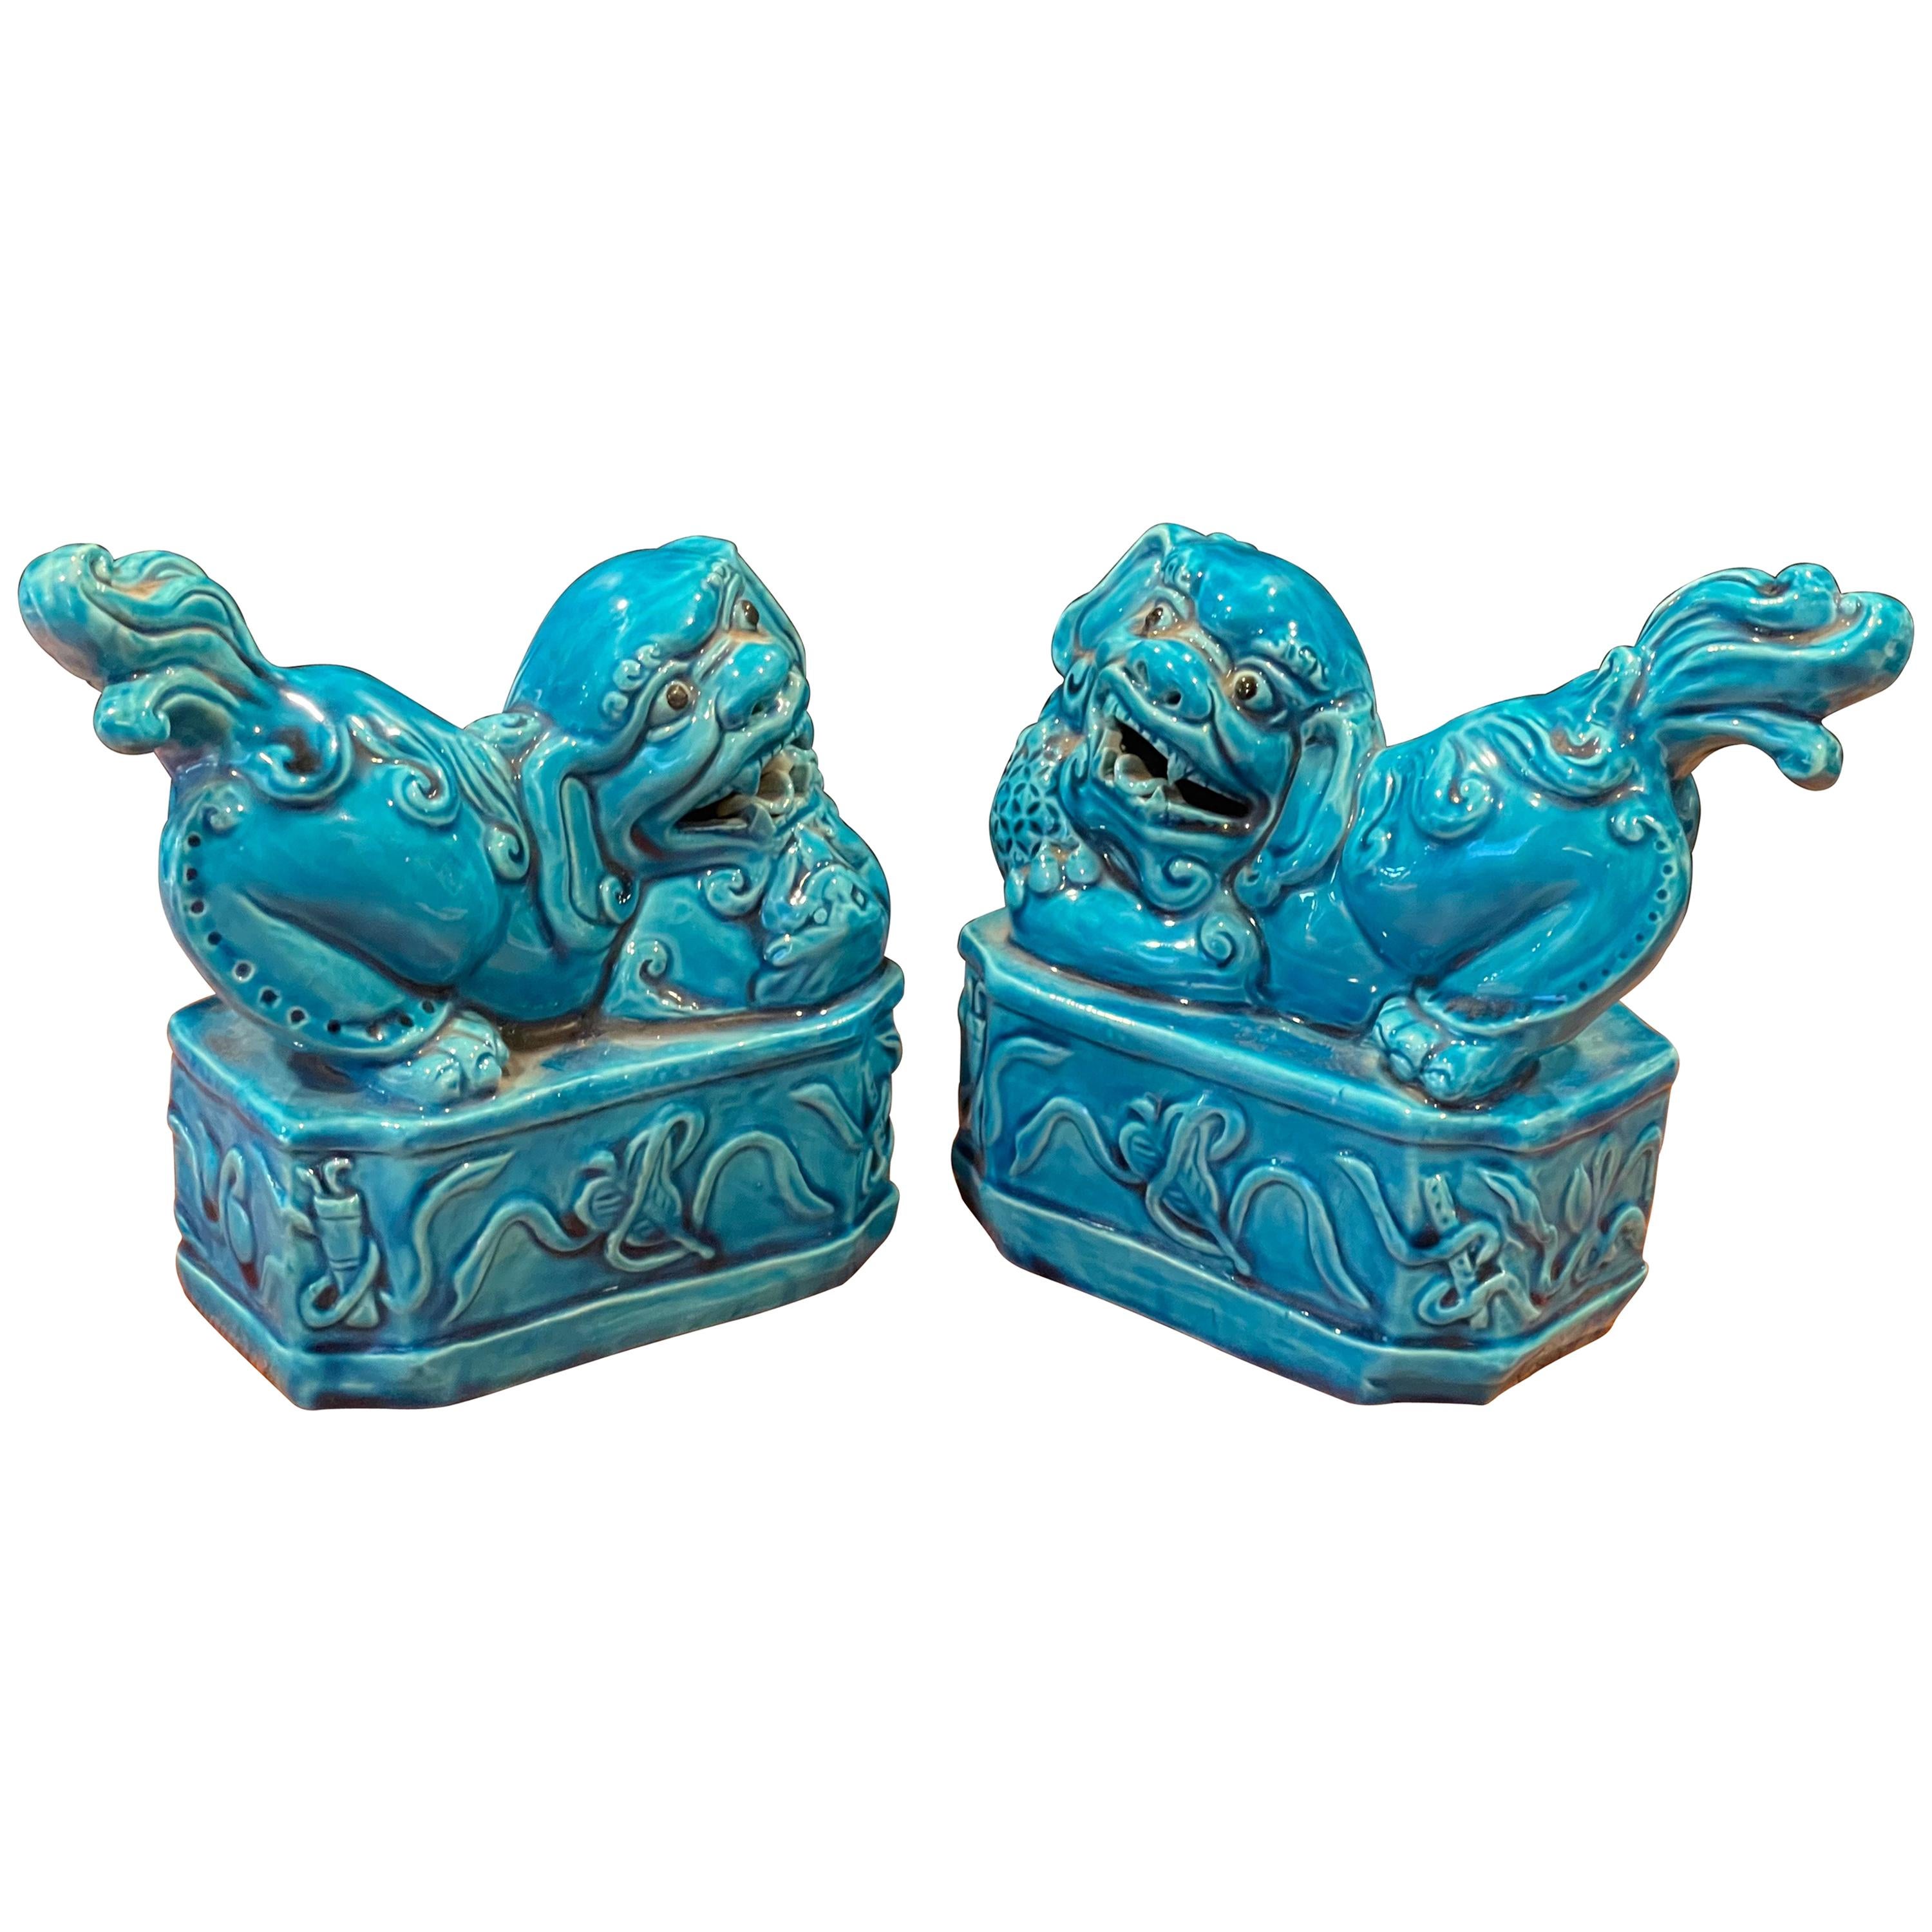 Pair of Mid-Century Aqua Ceramic Foo Dogs / Bookends